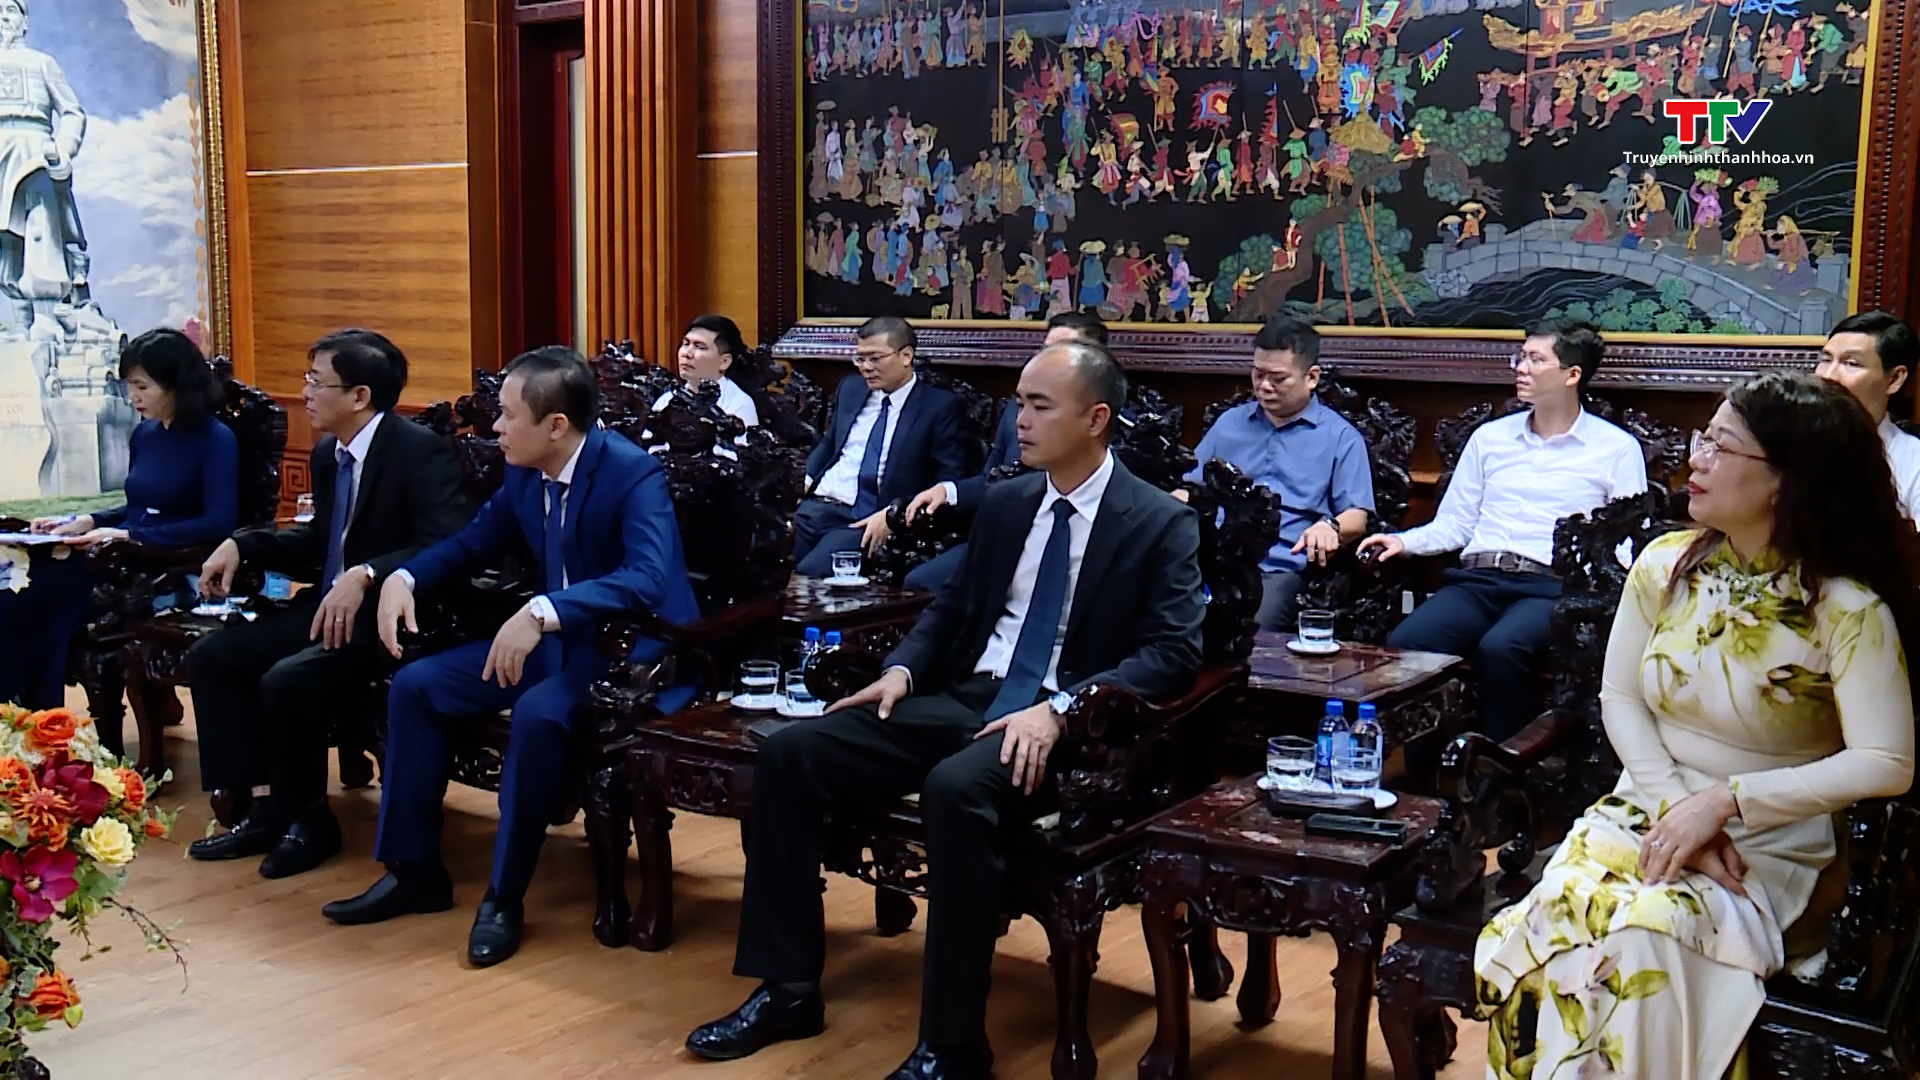 Chủ tịch Ủy ban Nhân dân tỉnh Đỗ Minh Tuấn tiếp xã giao Đại sứ đặc mệnh toàn quyền Nhà nước Thụy Sỹ tại Việt Nam- Ảnh 4.